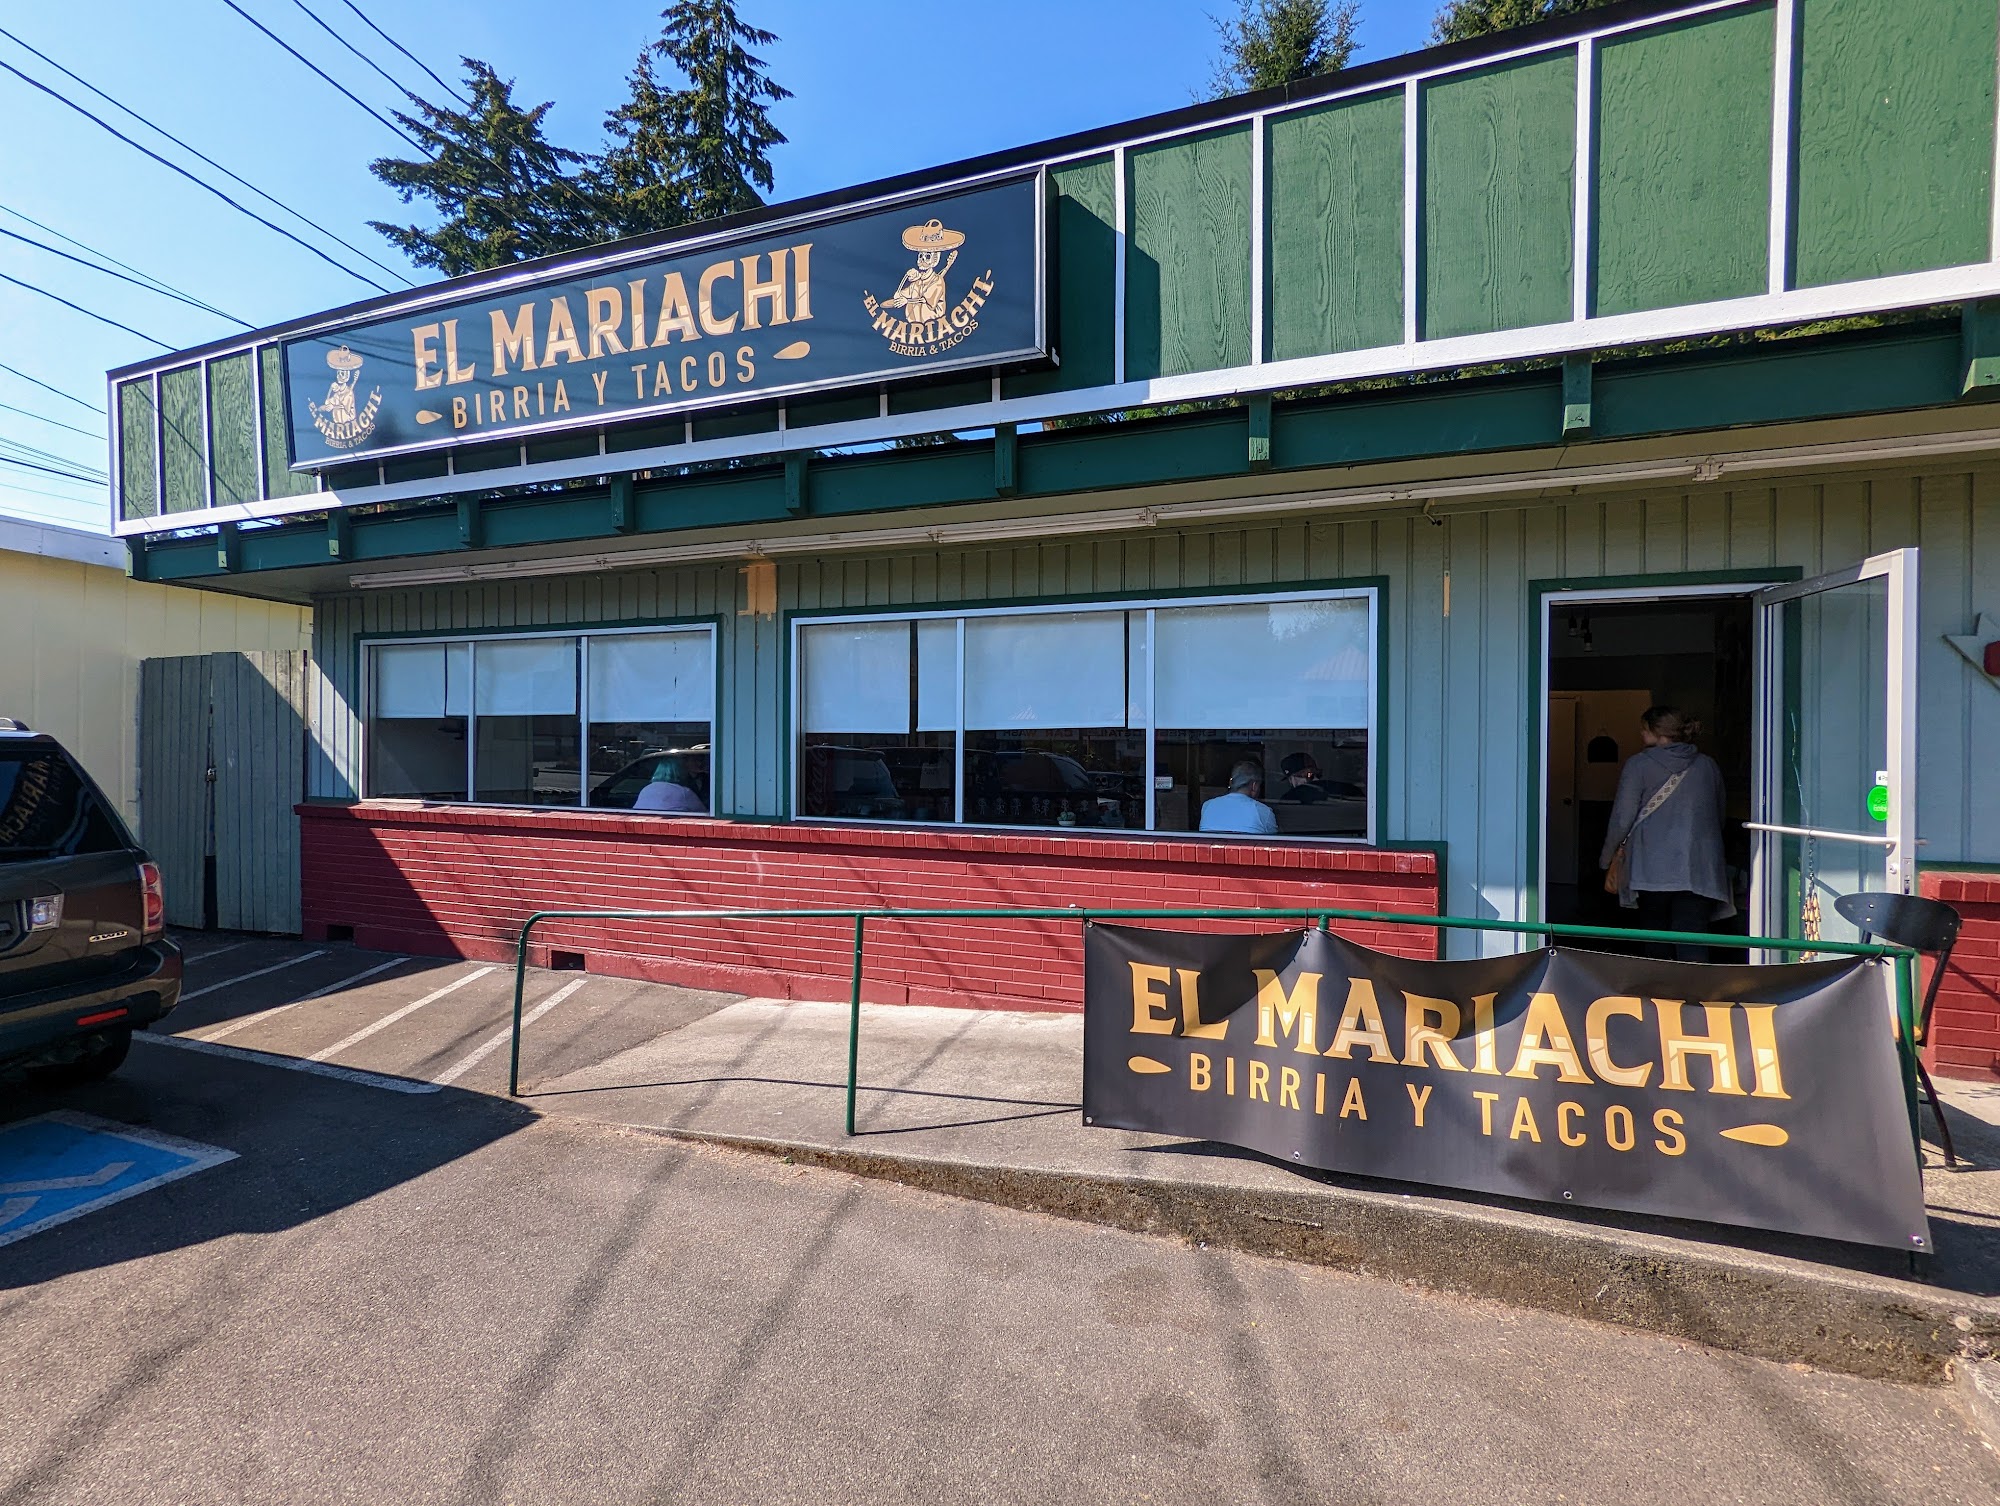 El mariachi birria y tacos